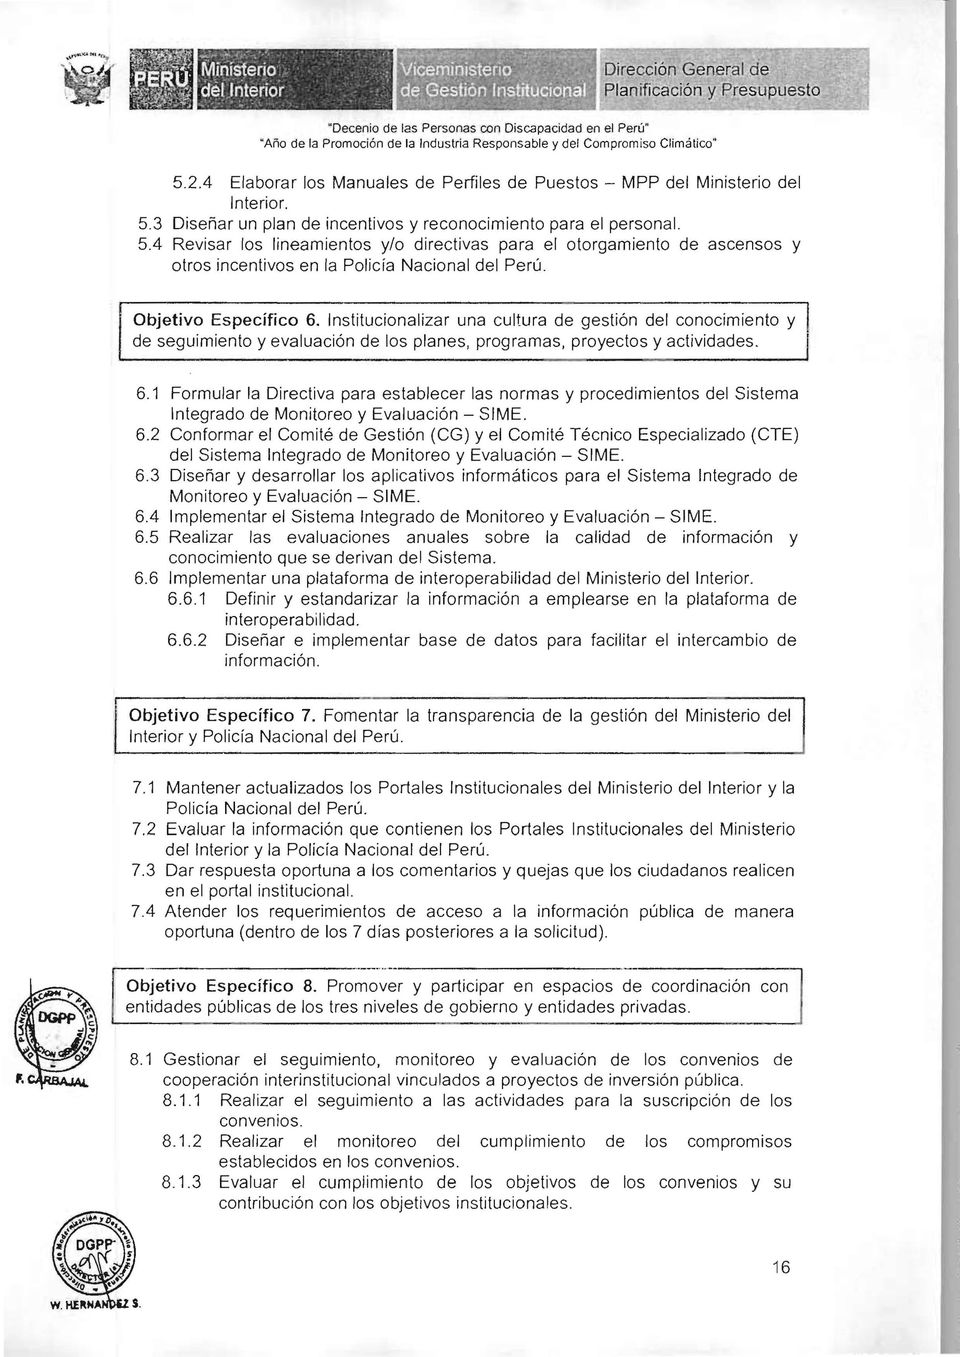 4 Elaborar los Manuales de Perfiles de Puestos - MPP del Ministerio del Interior. 5.